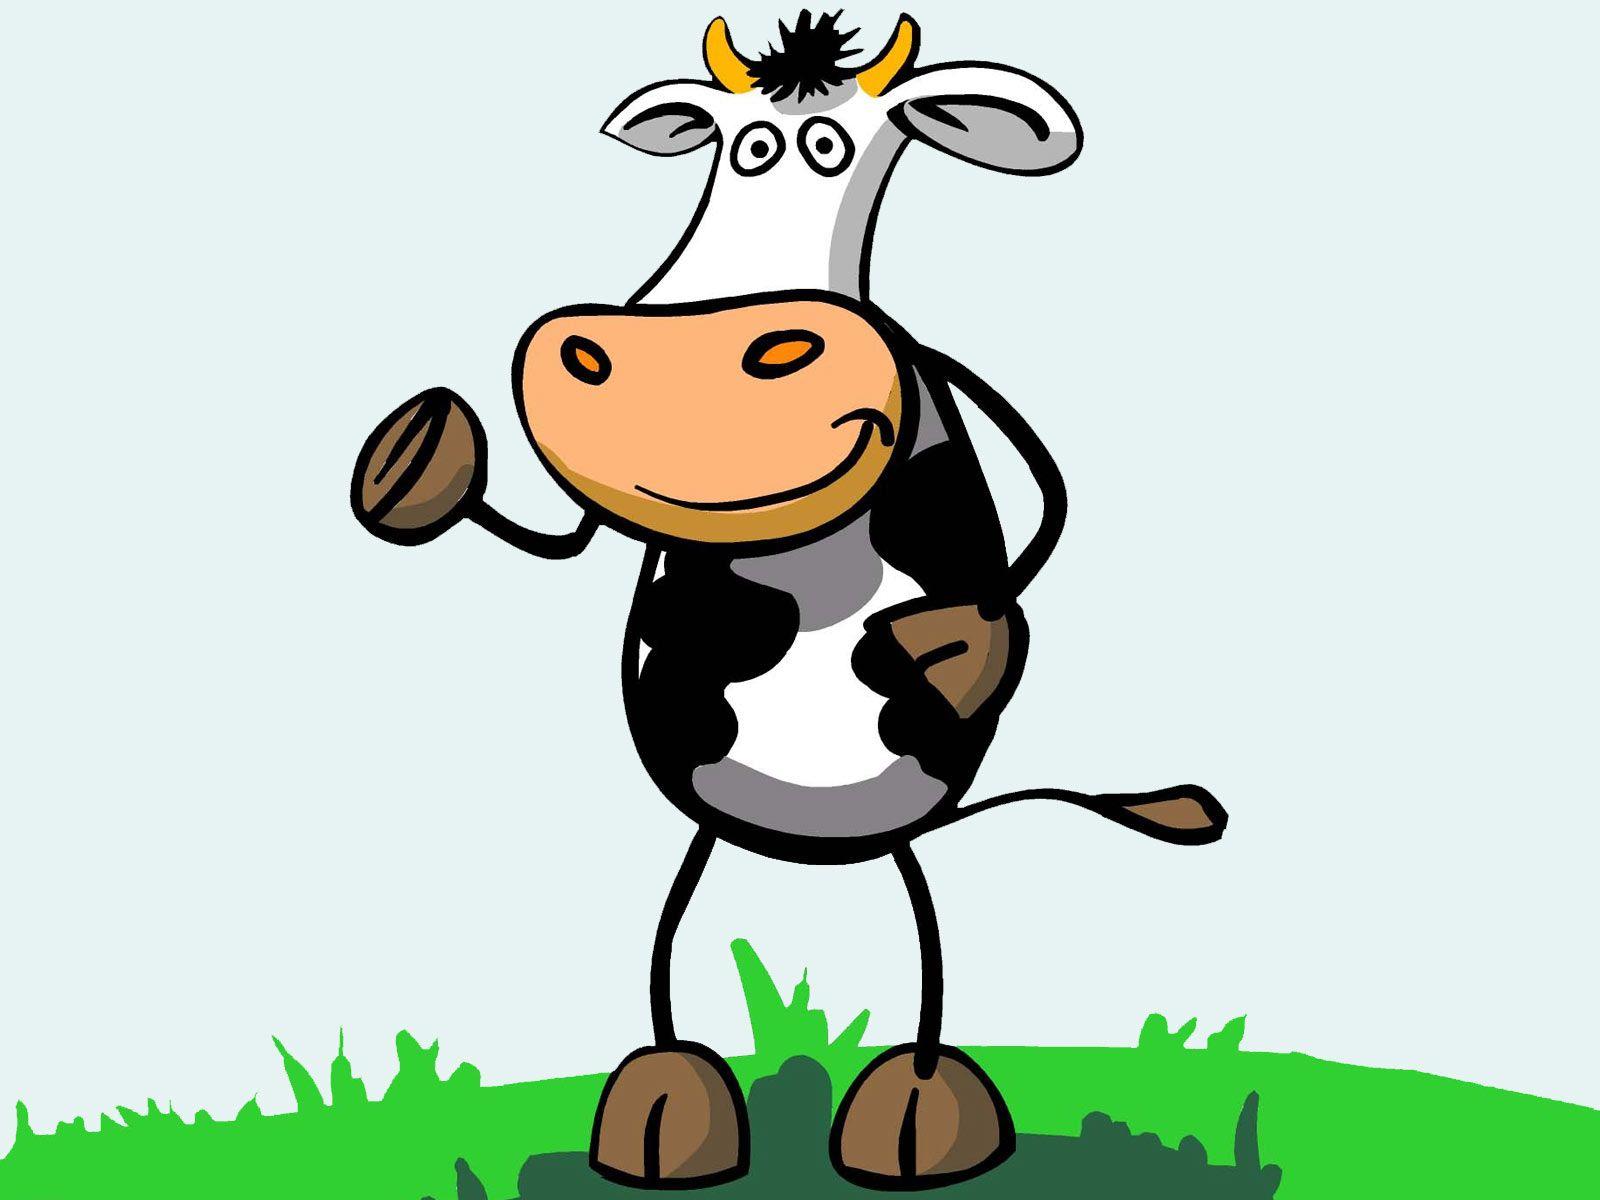 Hình ảnh con bò hoạt hình miễn phí 1600x1200, Tải xuống Clip nghệ thuật miễn phí, Clip nghệ thuật miễn phí trên Thư viện Clipart